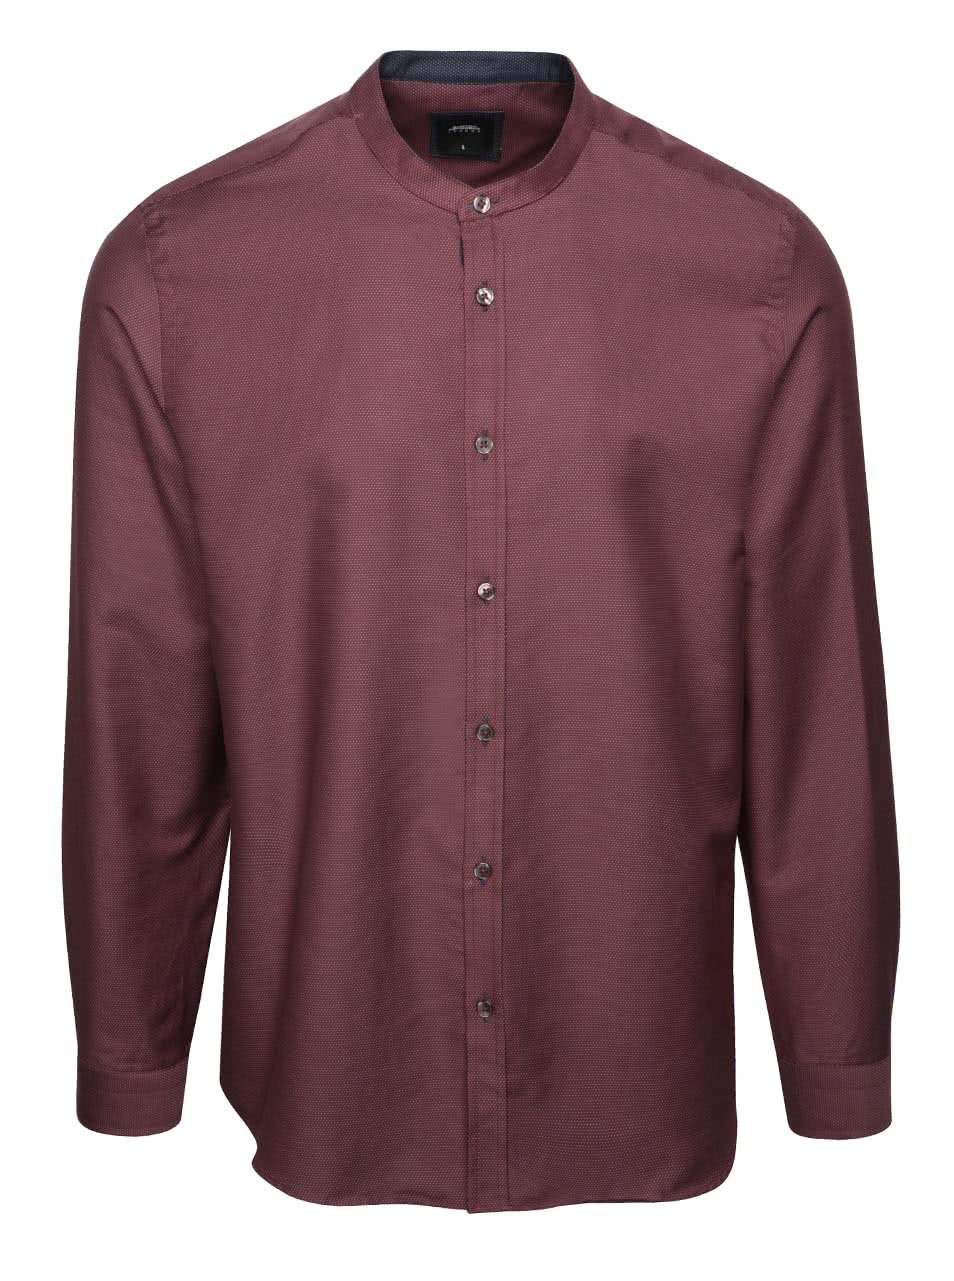 Vínová puntíkatá košile bez límečku Burton Menswear London